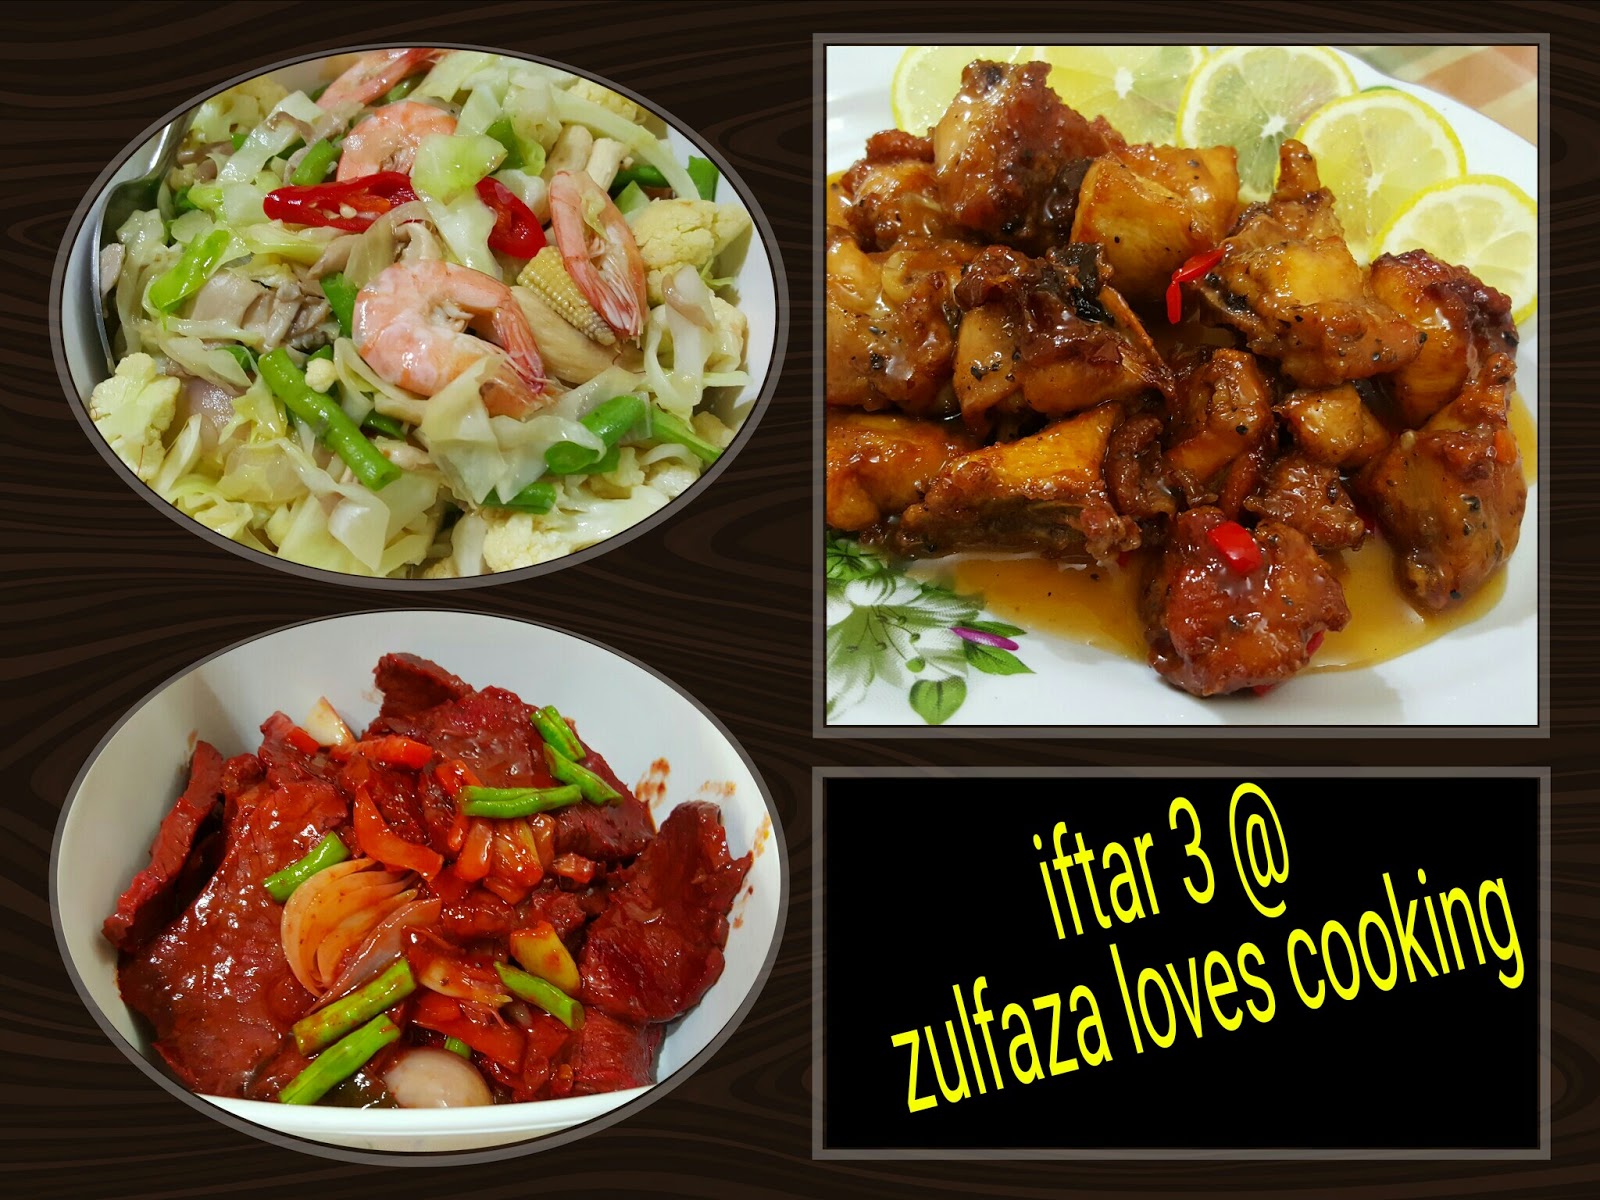 ZULFAZA LOVES COOKING: Iftar 3 : Daging masak merah ala 